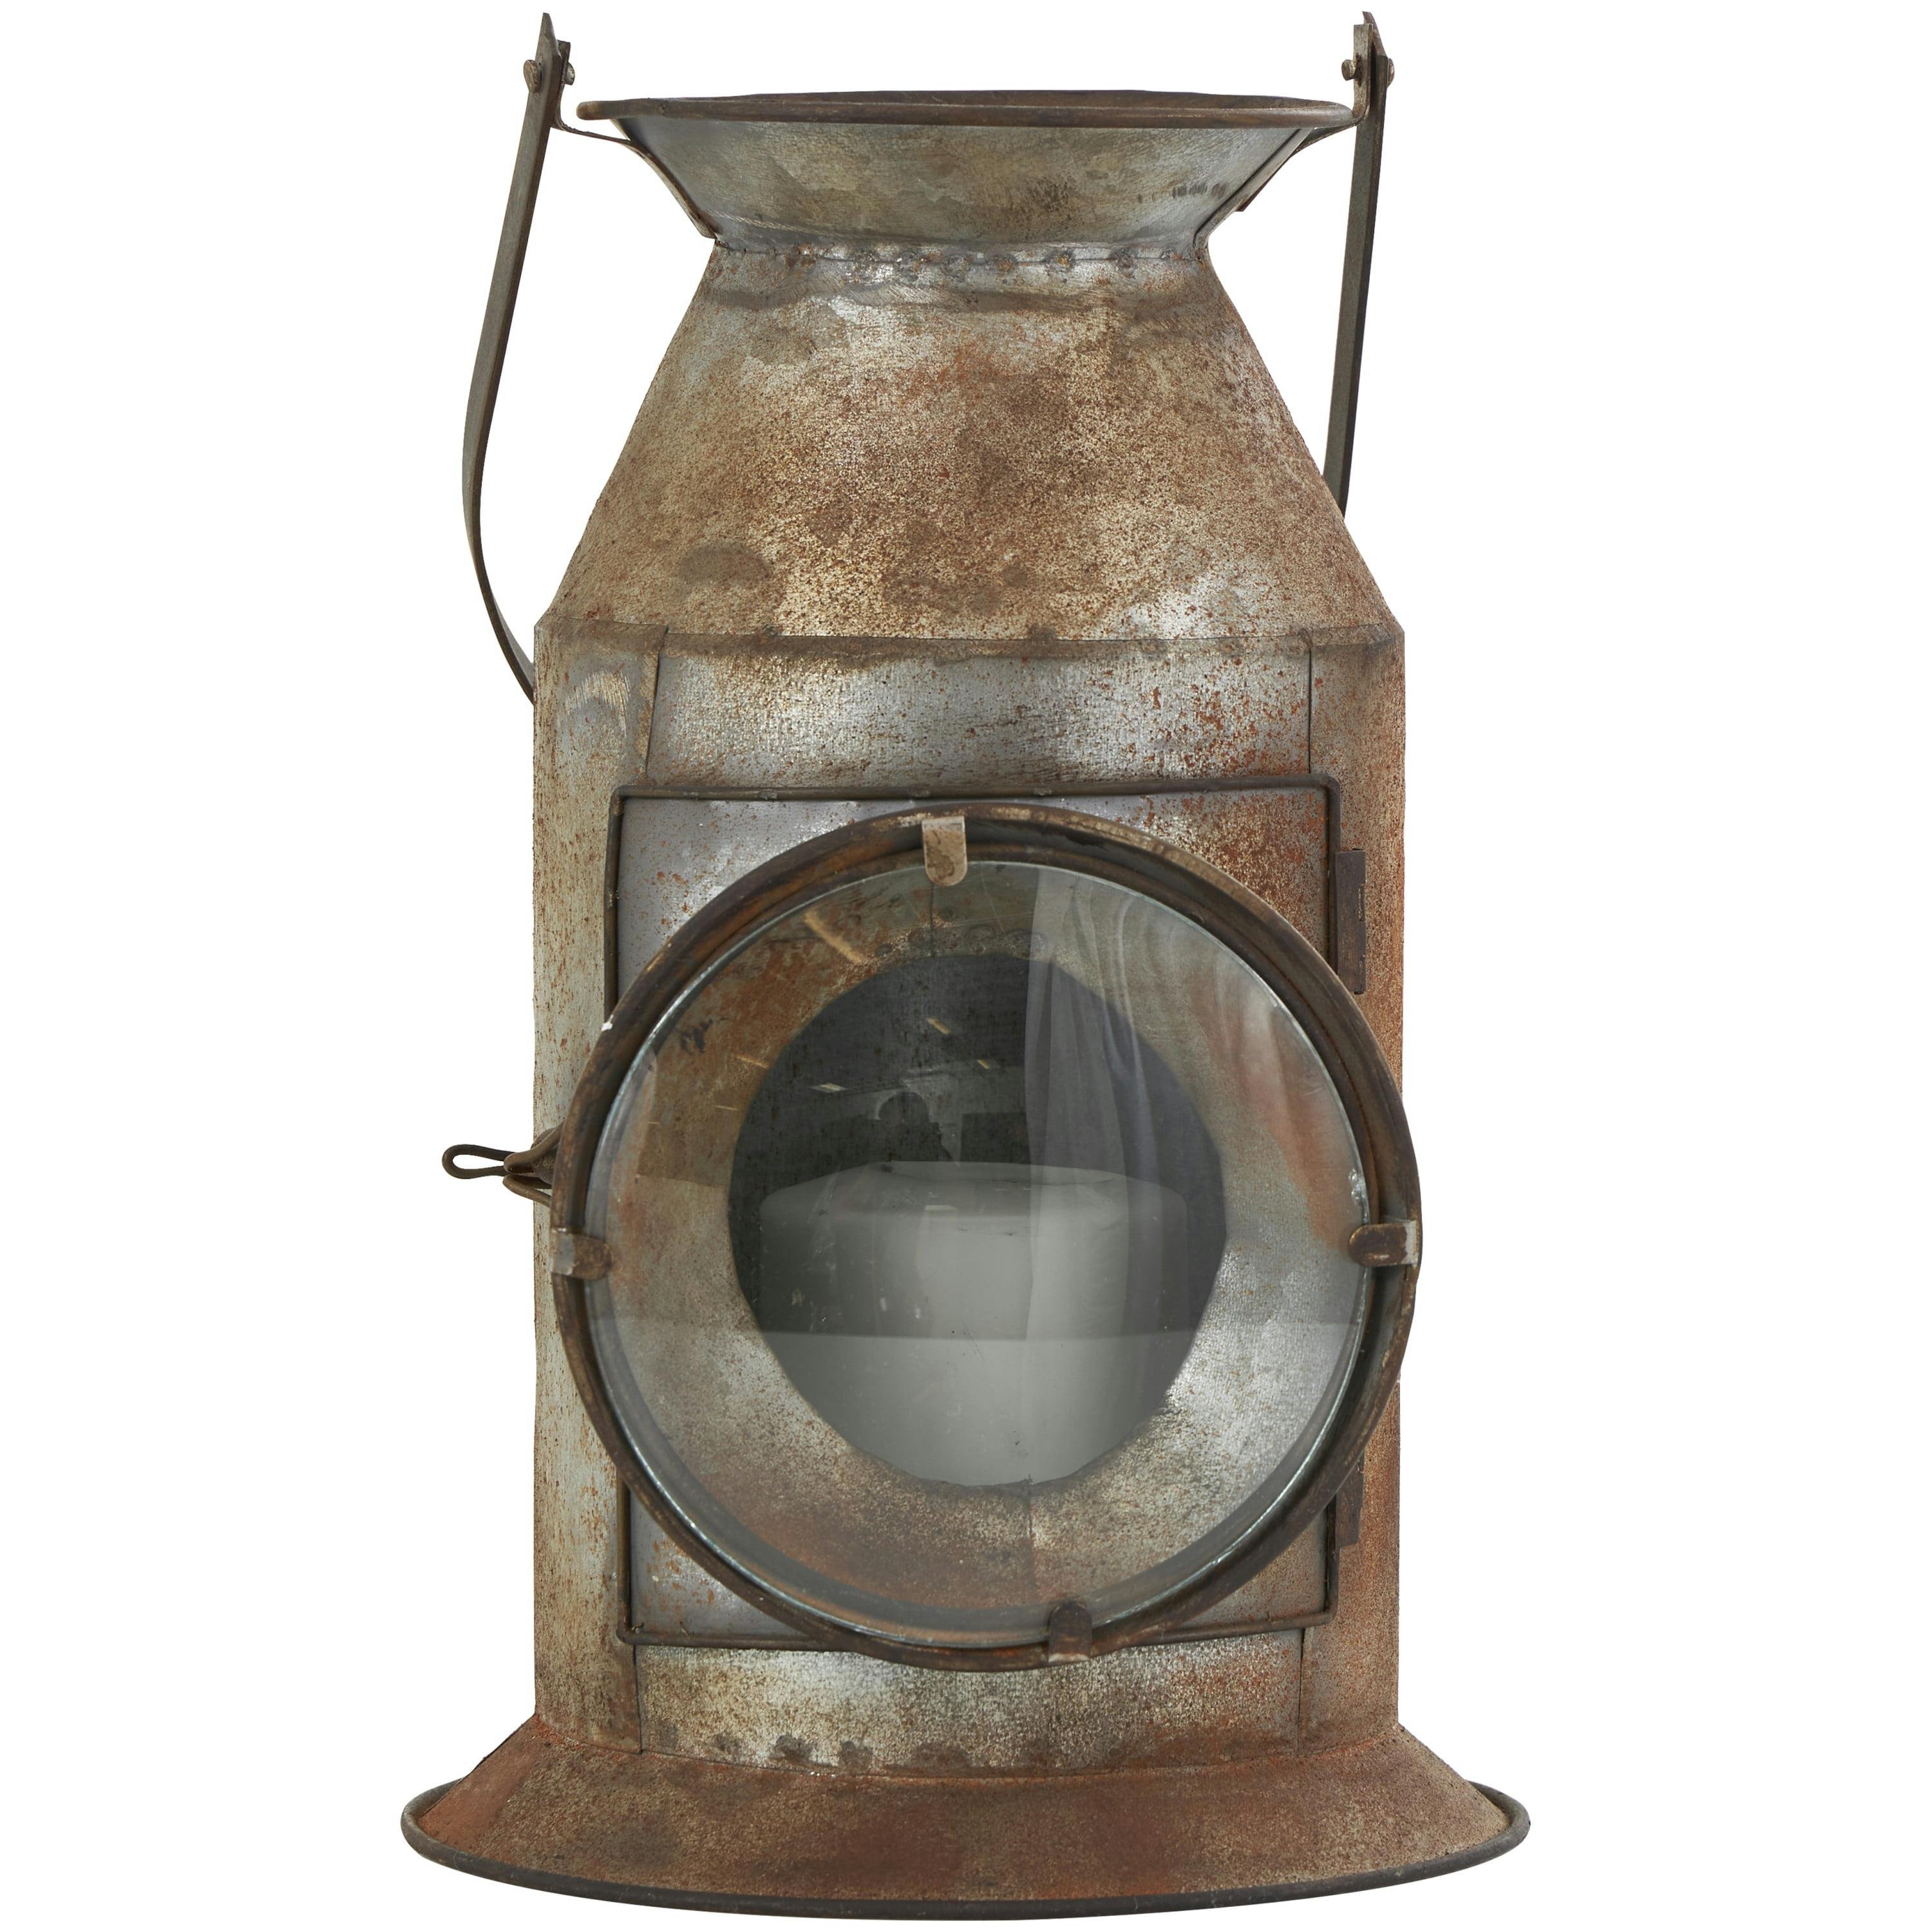 Rustic Gray Metal Hanging Candle Lantern, 8" x 19"